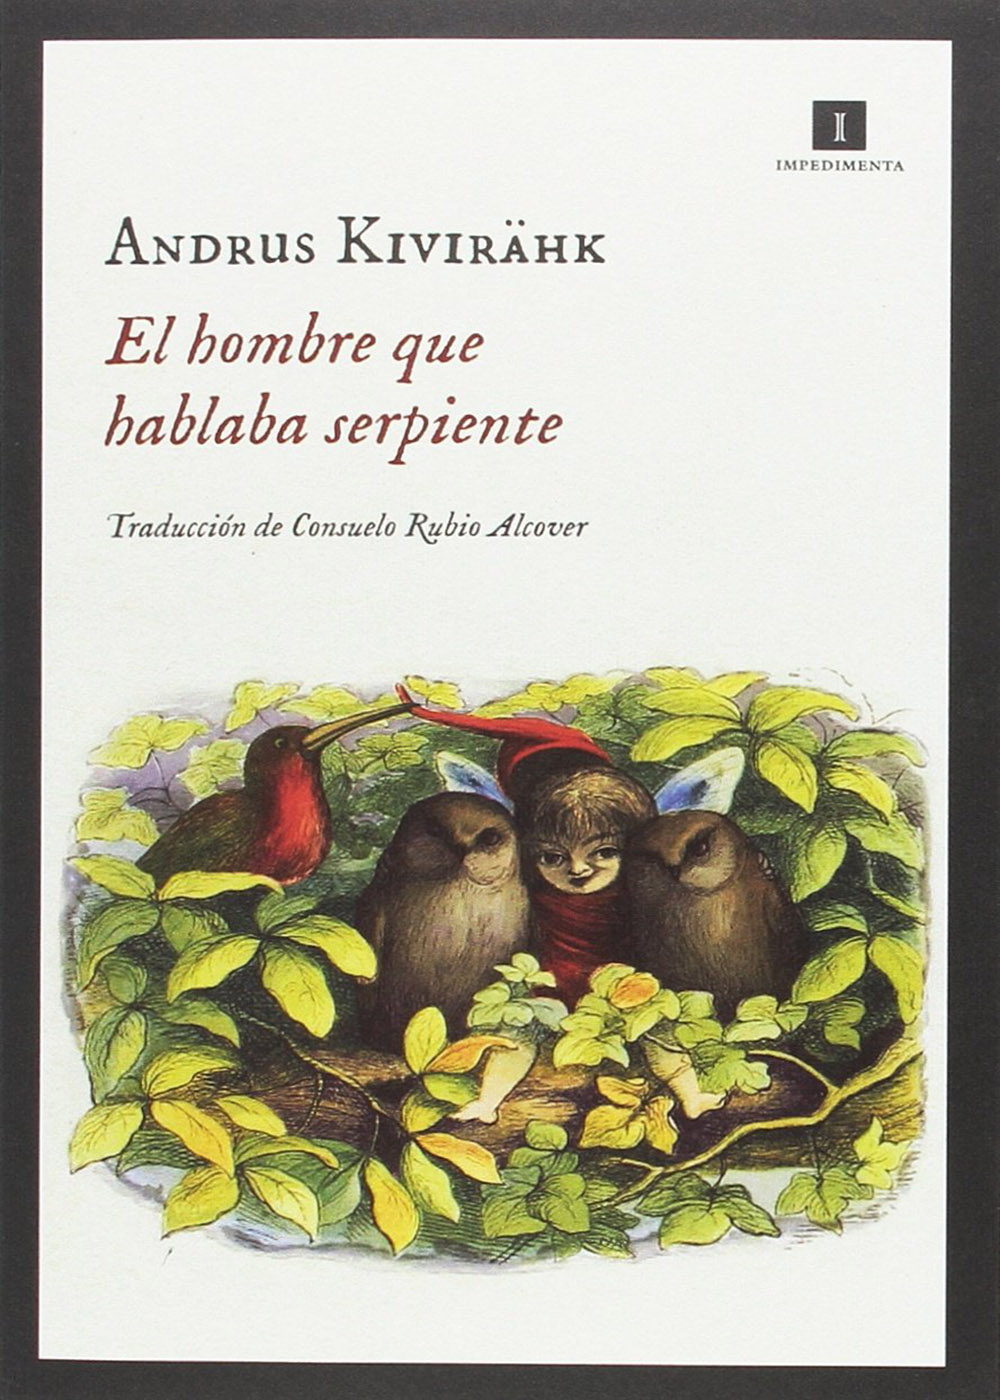 Andrus Kivirähk - El hombre que hablaba serpiente